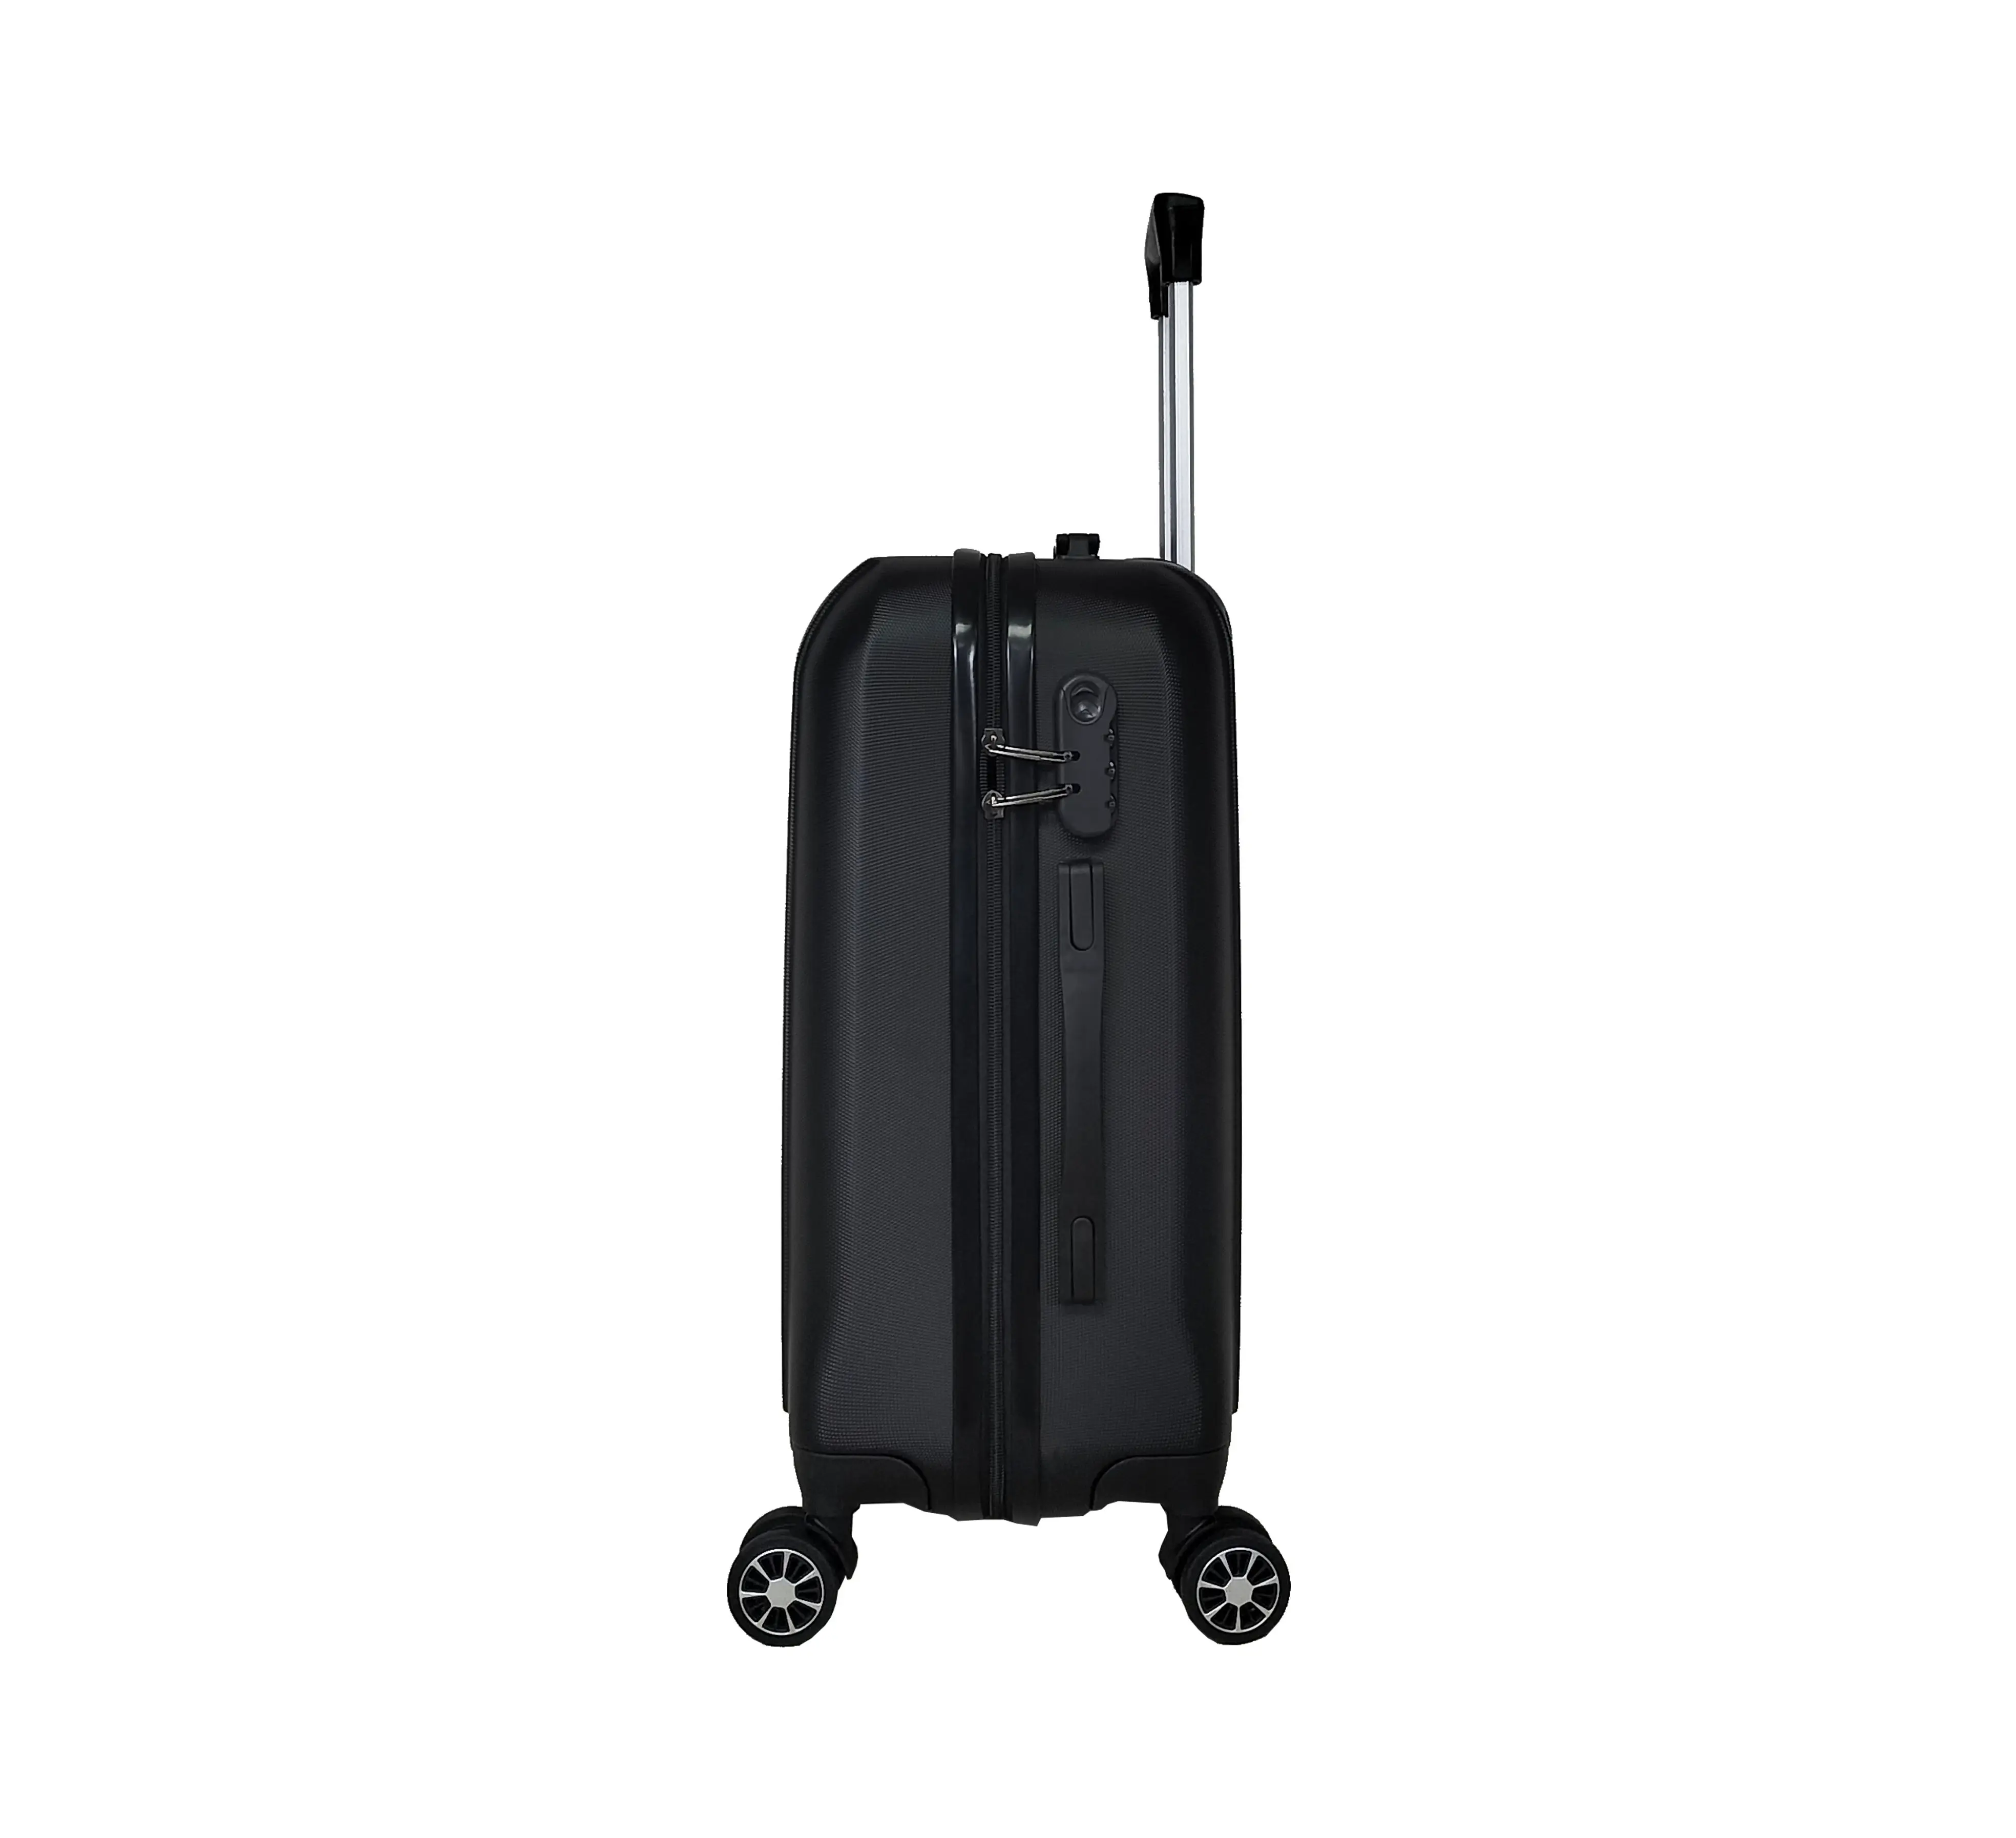 Nuevo equipaje personalizado de 24 pulgadas con cerradura de combinación de viaje maleta con ruedas universal con equipaje de carcasa dura ABS